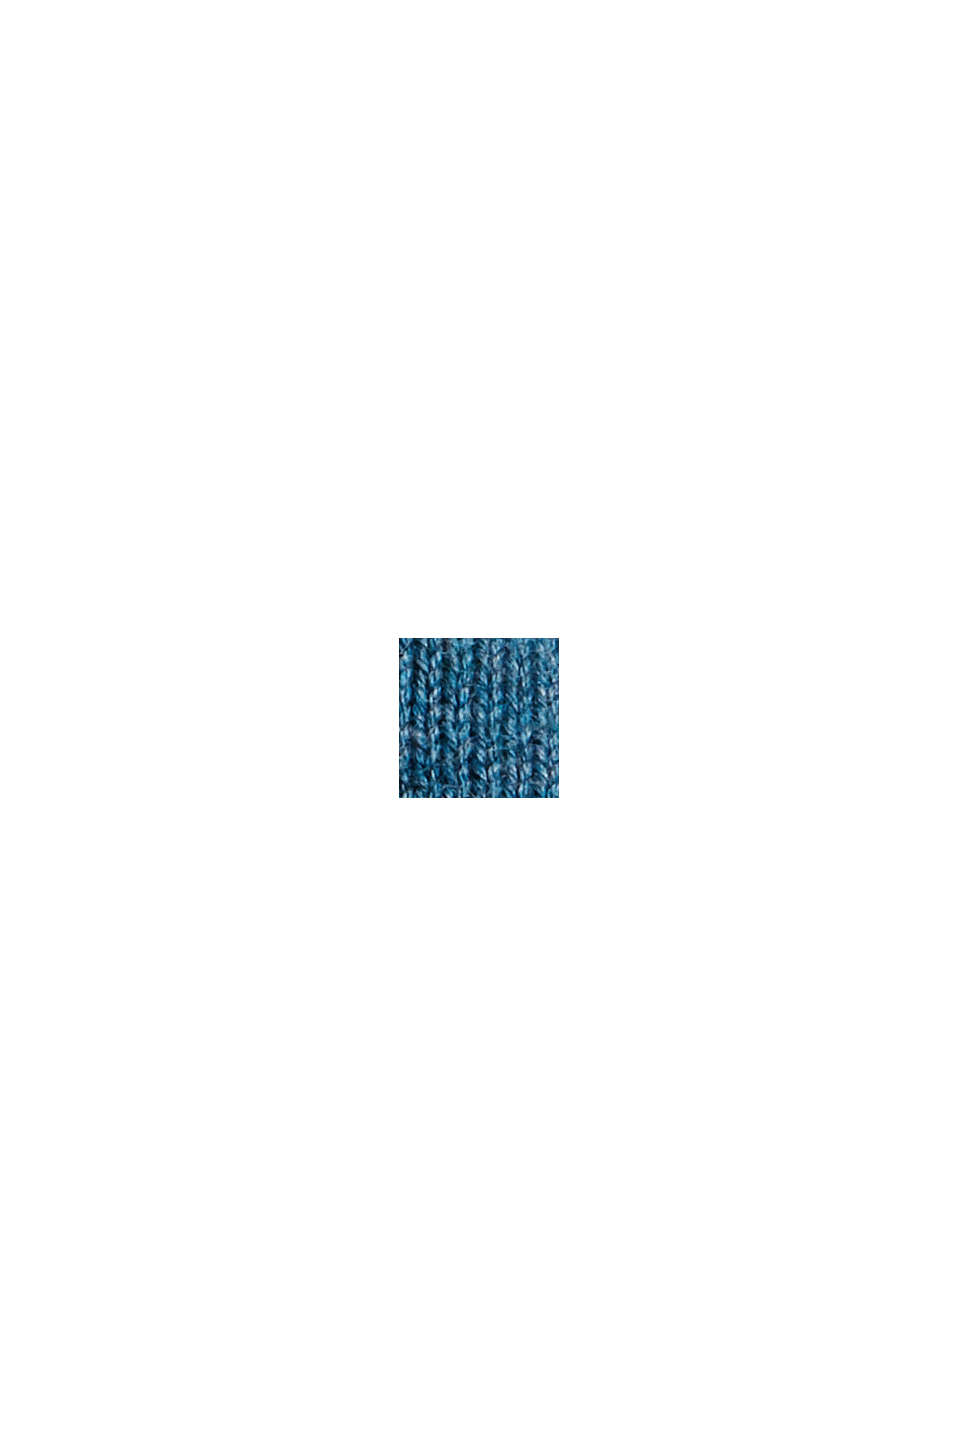 Pulovr s kulatým výstřihem, z pima bavlny, PETROL BLUE, swatch